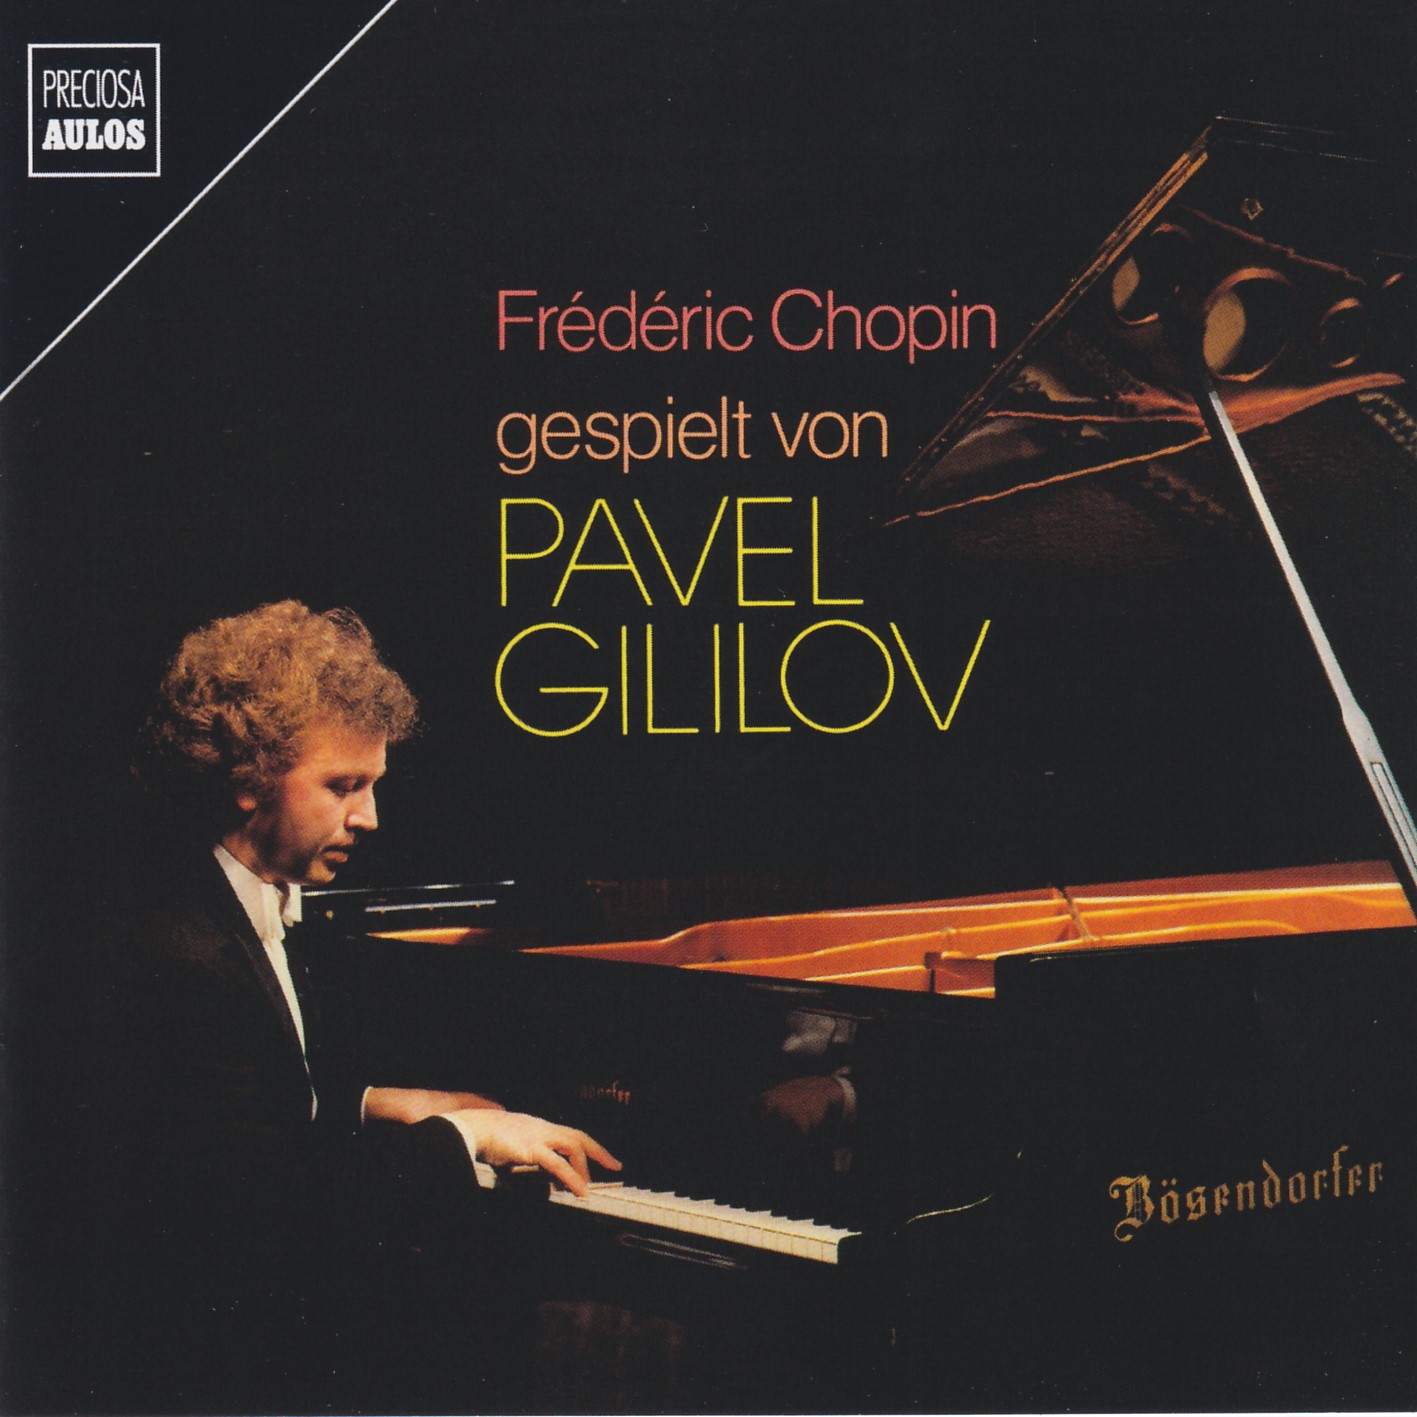 Frédéric Chopin gespielt von Pavel Gililov